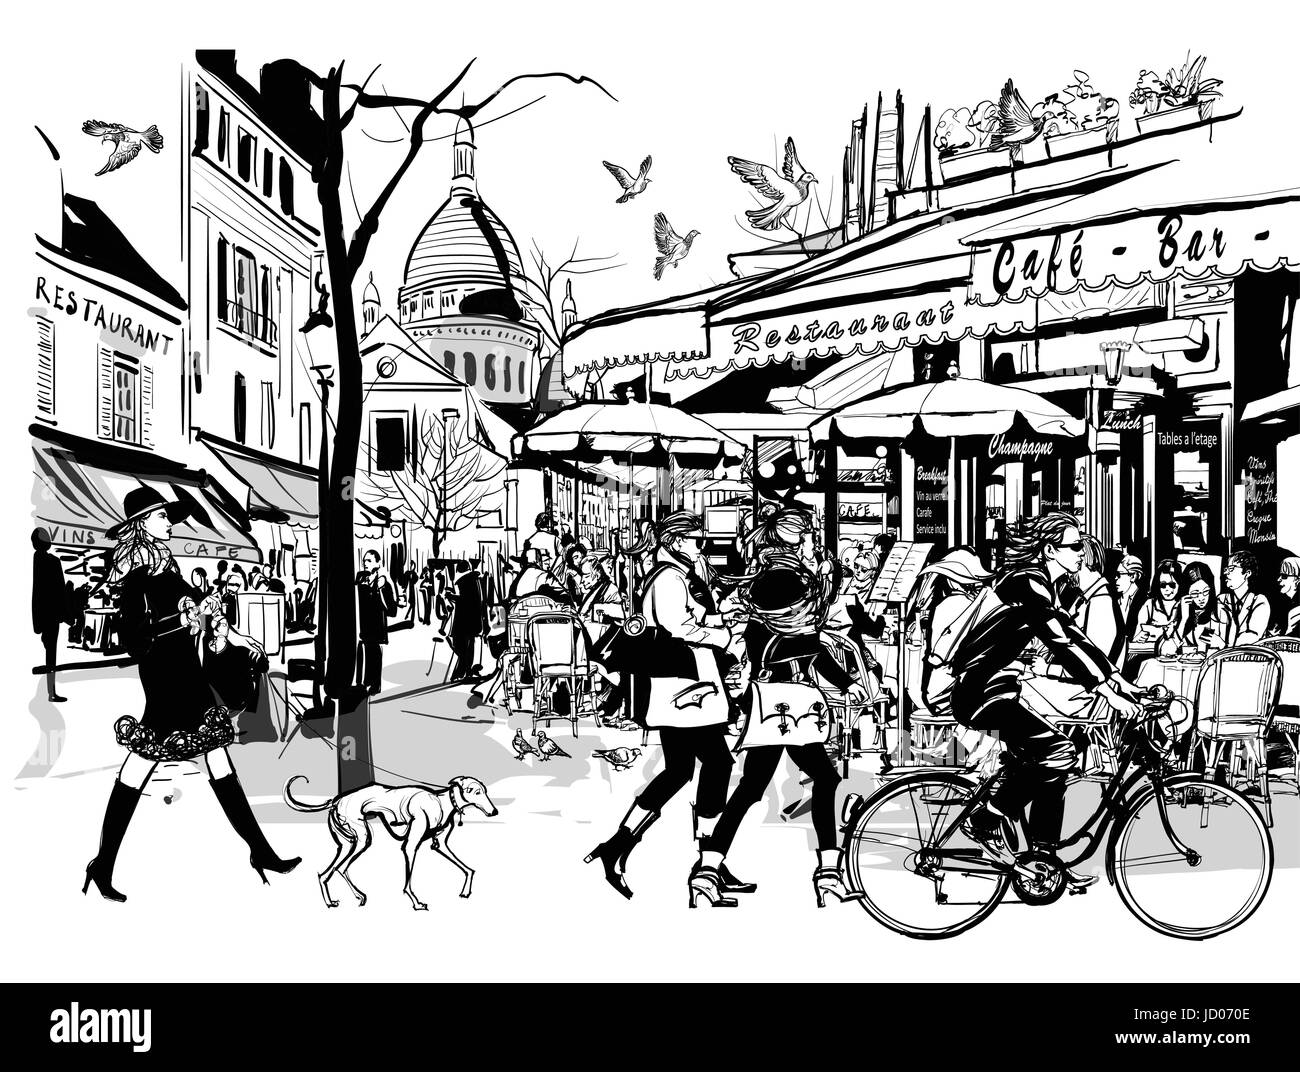 Altes Café in Paris Montmartre - Vektor-illustration Stock Vektor